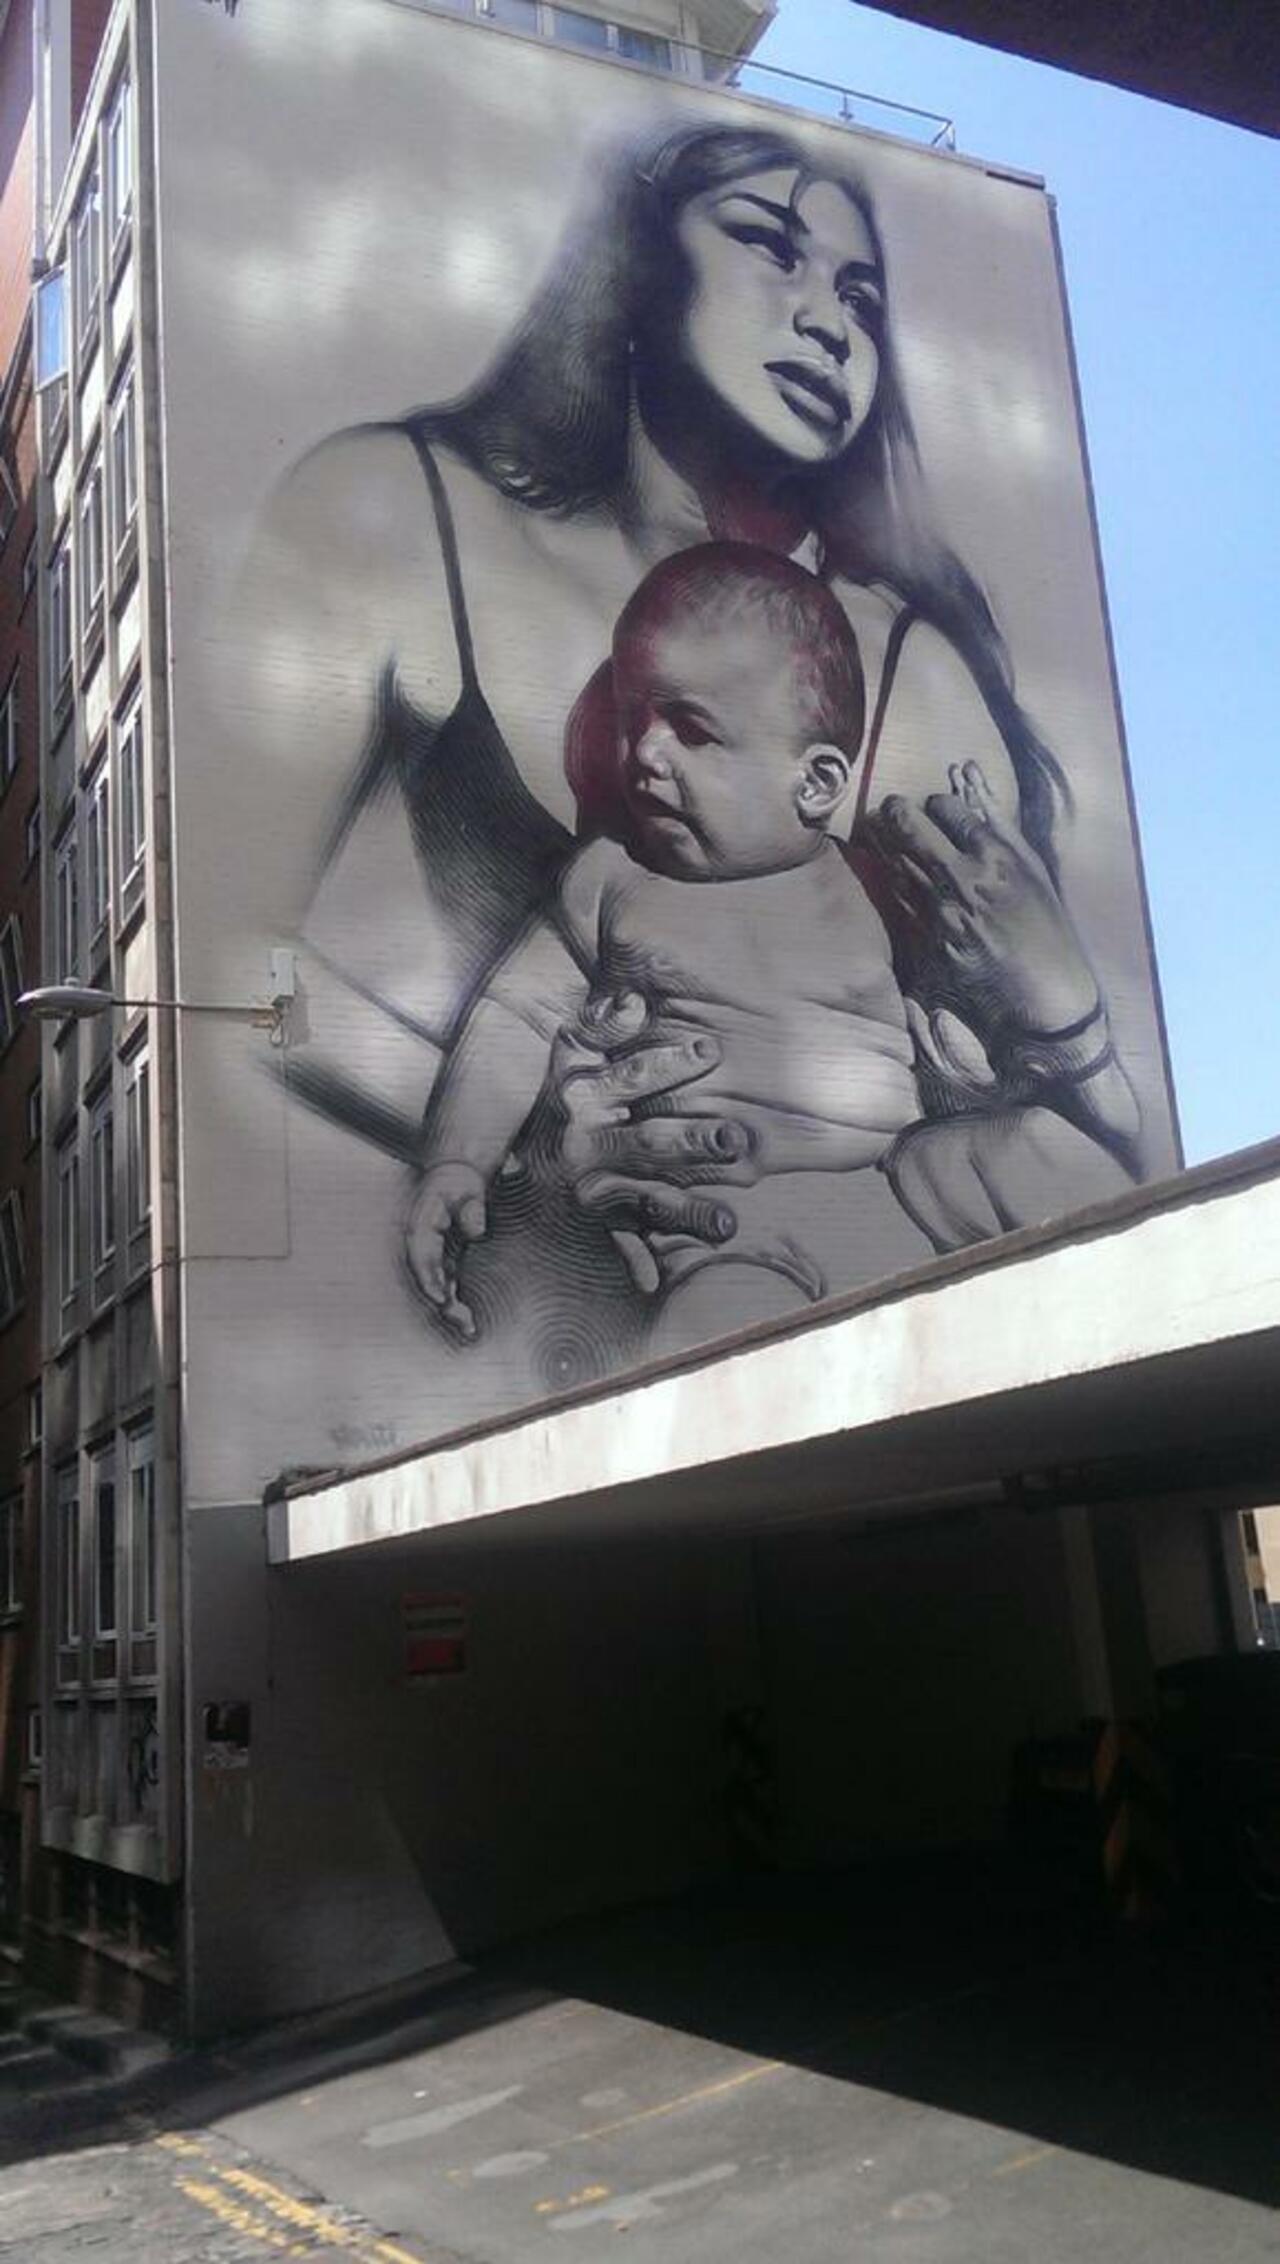 #streeart #urbanart #bristol #art #graffiti #graffitiart #elmac http://t.co/47pHqLQ7QG